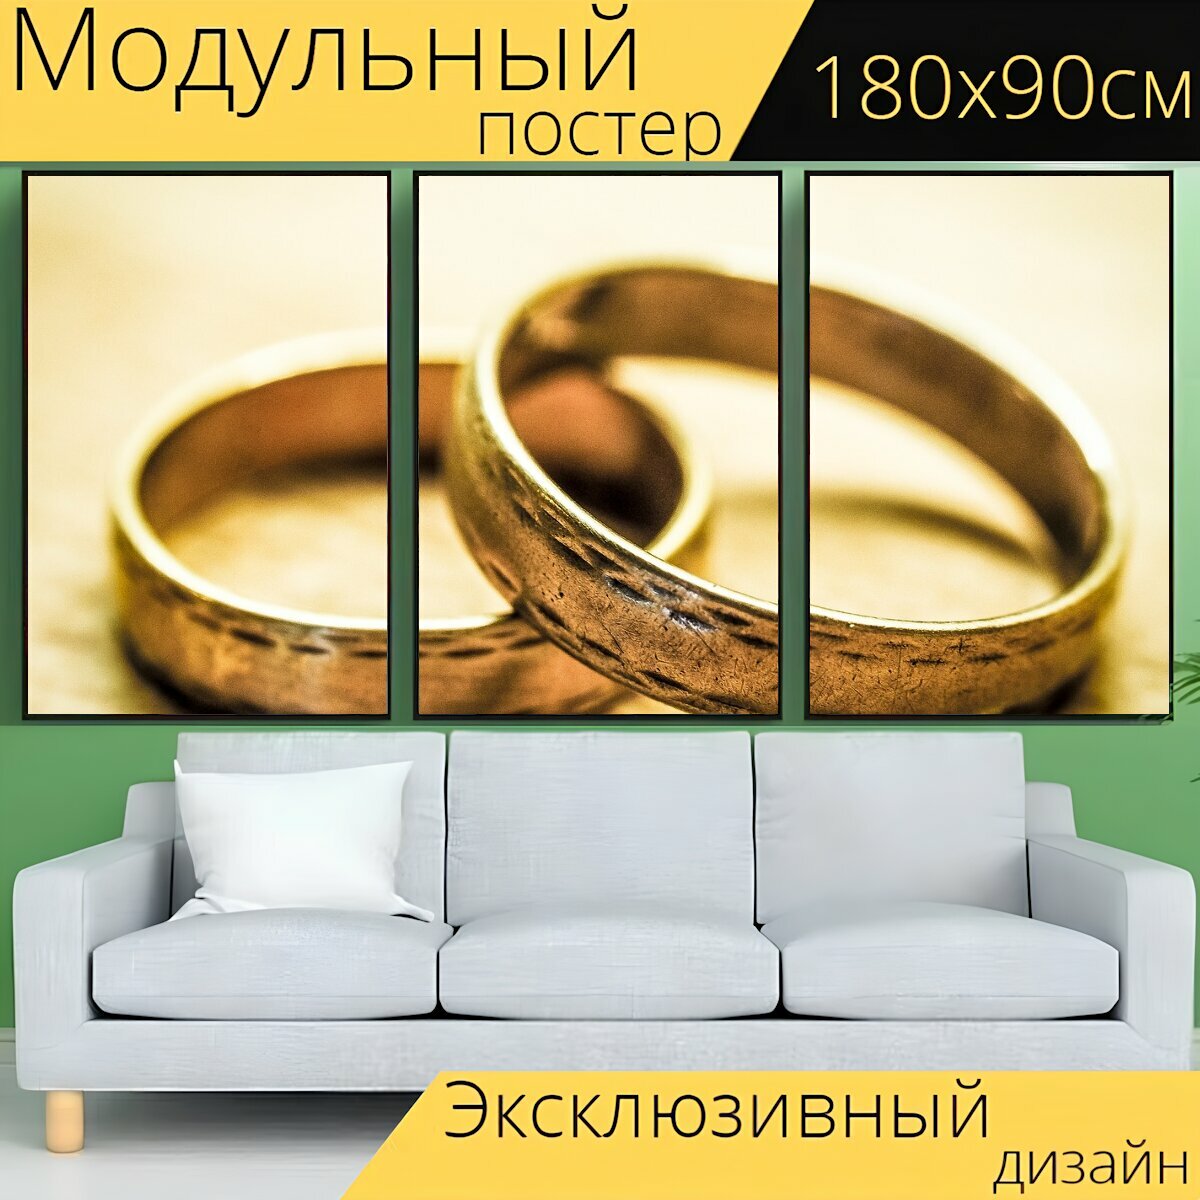 Модульный постер "Свадебные кольца, перед, кольца" 180 x 90 см. для интерьера